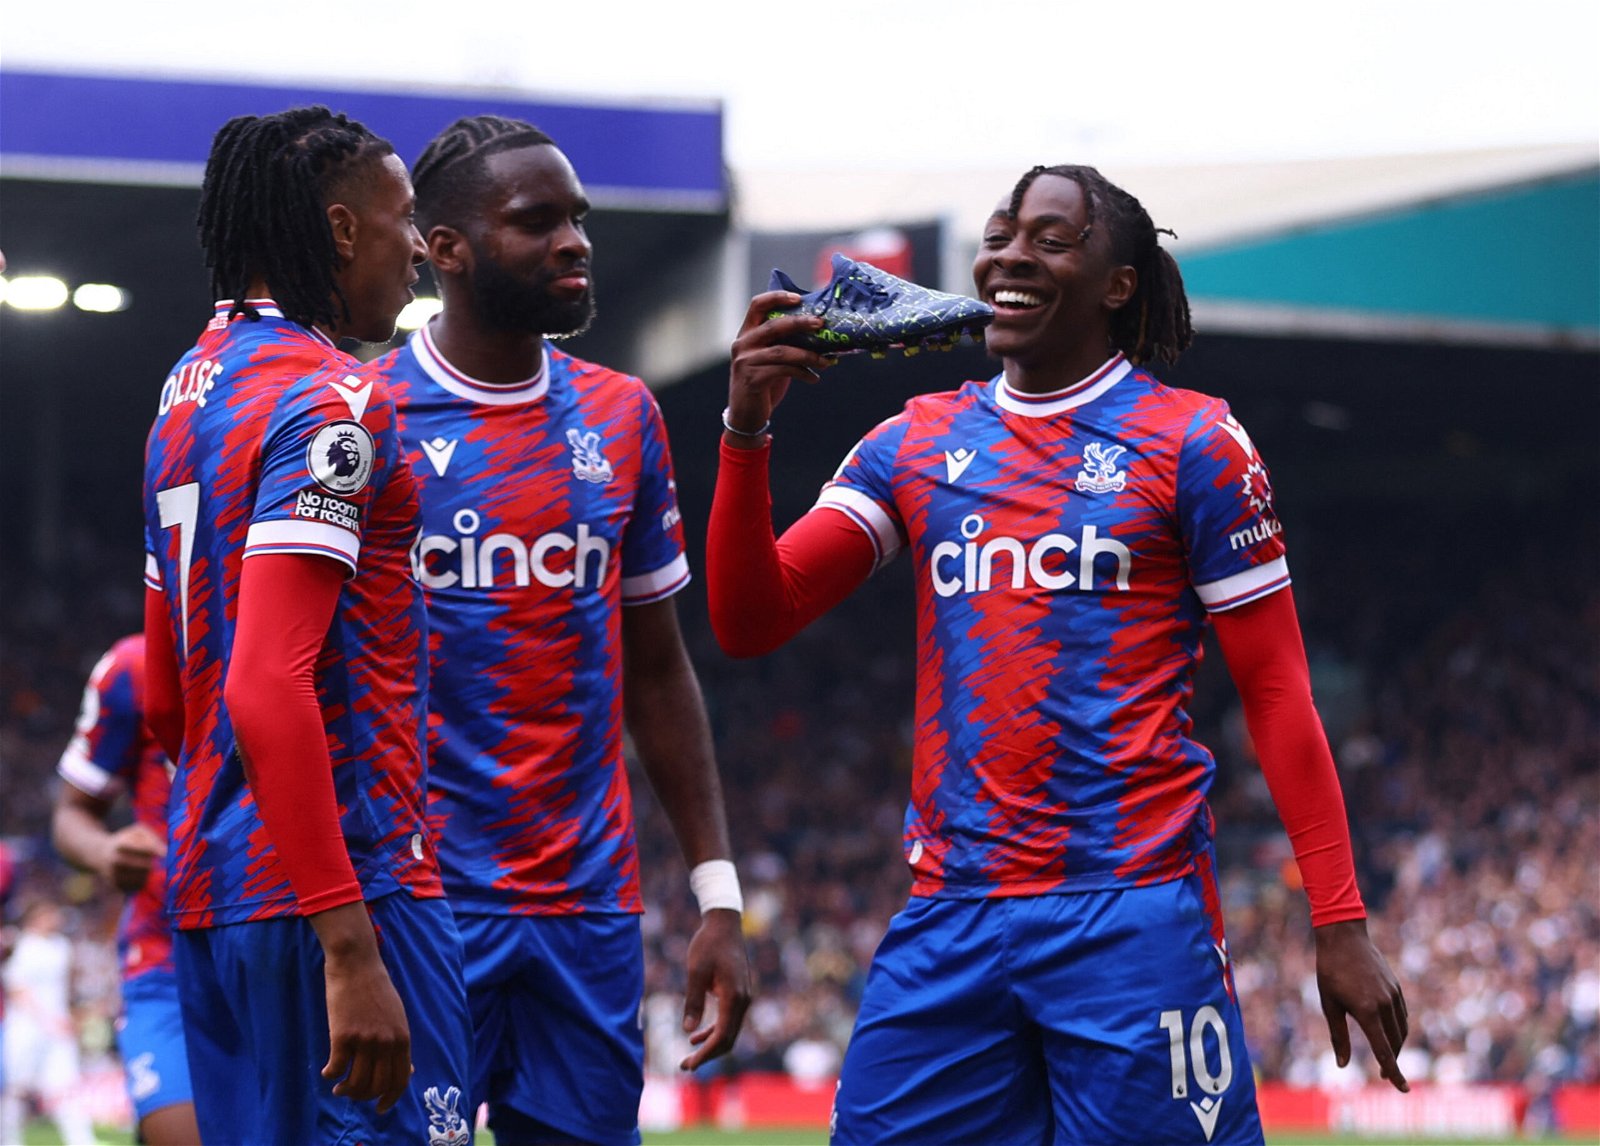 Crystal Palace's Eberechi Eze celebrates scoring their third goal with Michael Olise and Odsonne Edouard